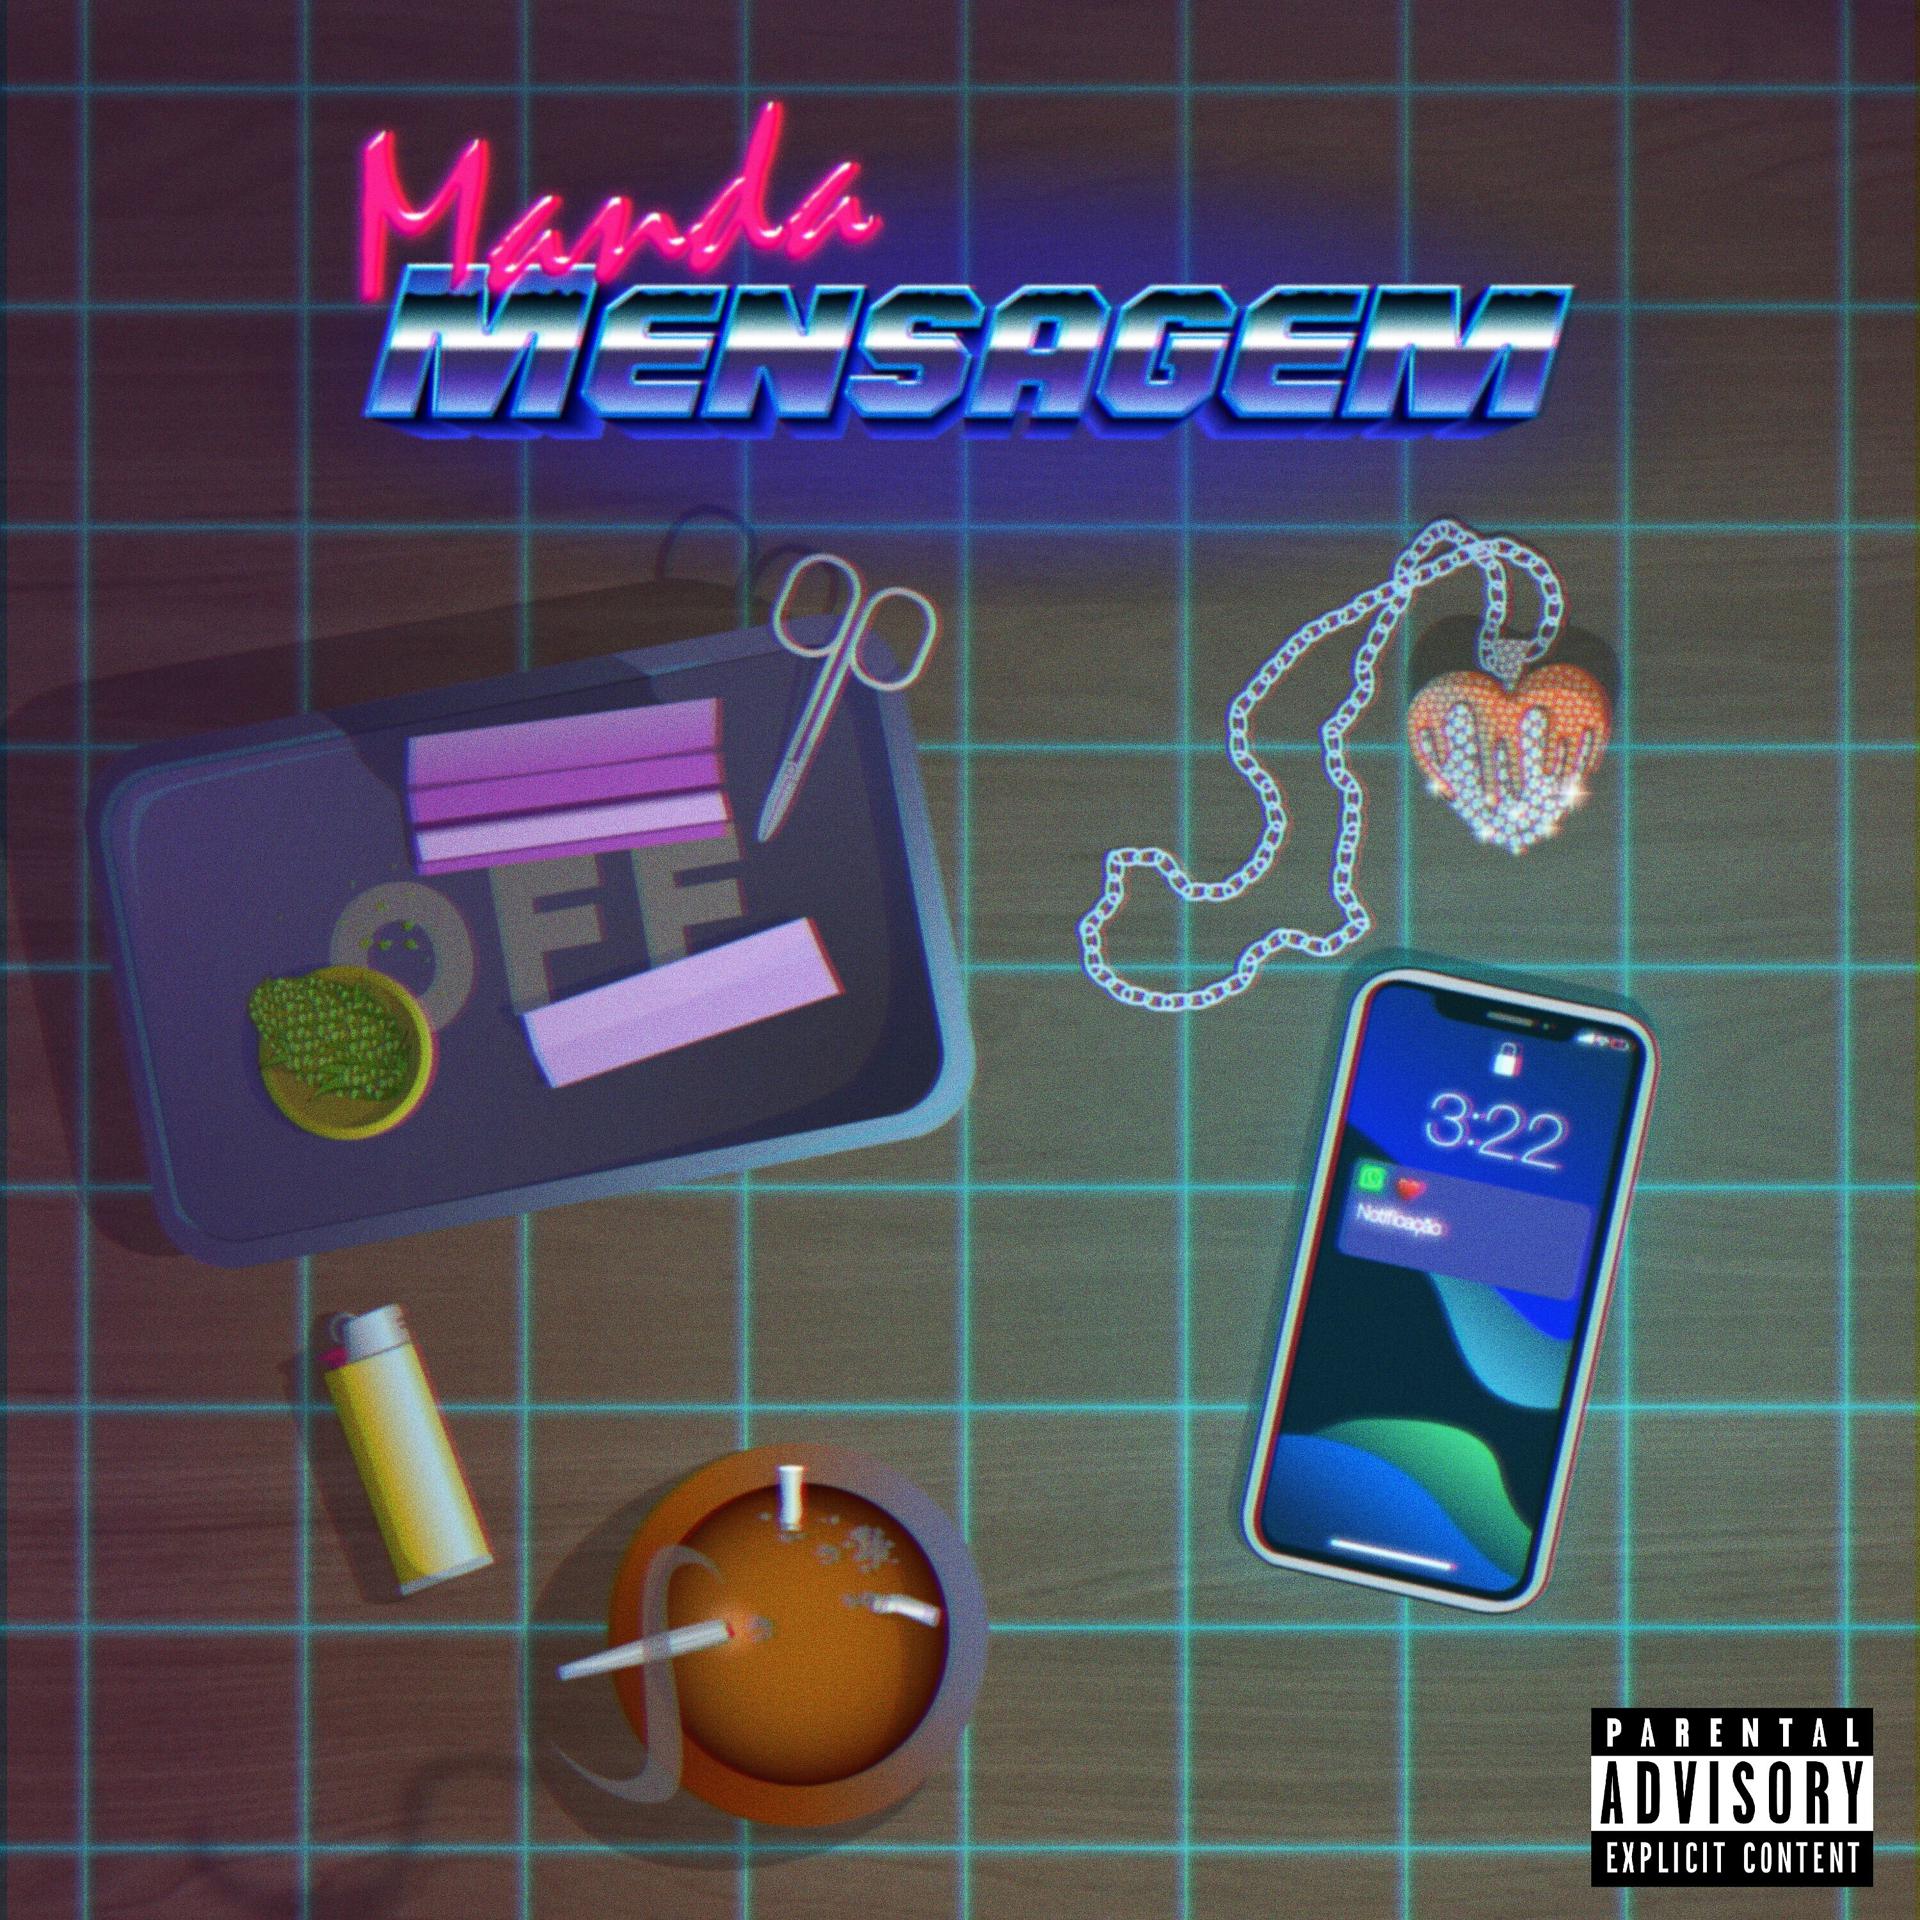 Постер альбома Manda Mensagem